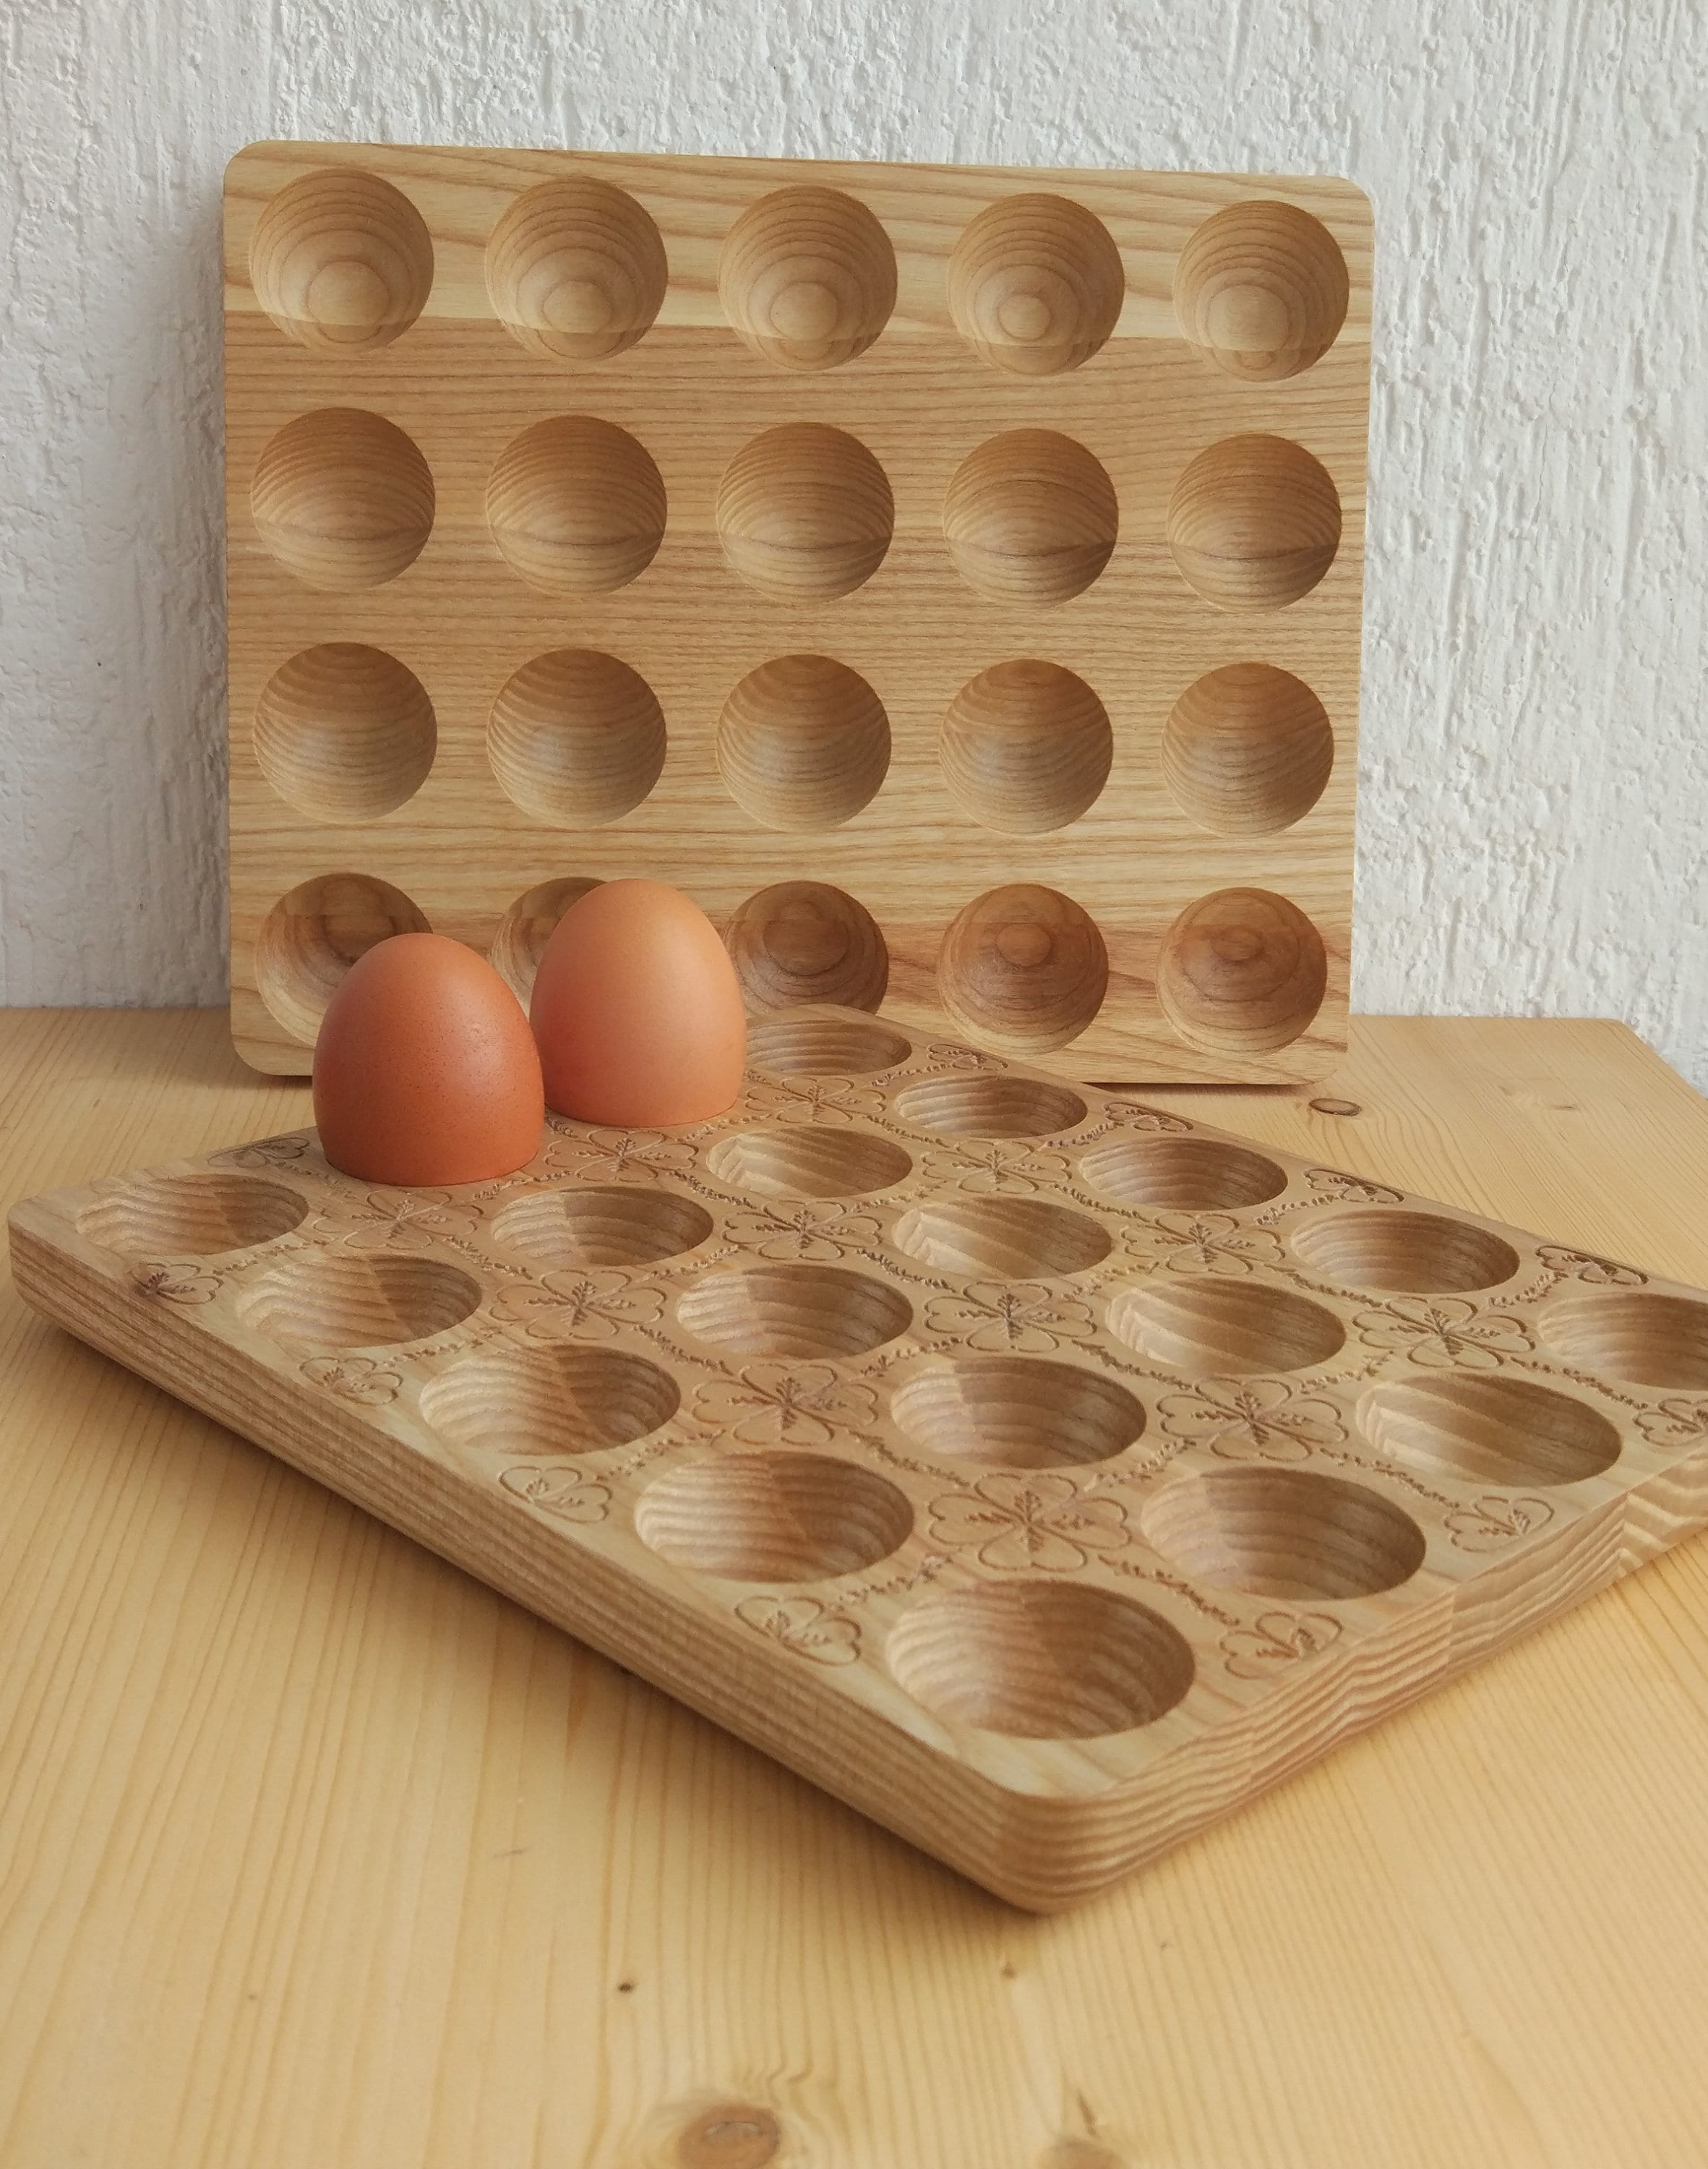 Countertop Egg Holder, Egg Holder, Egg Rack, Original Wood Egg